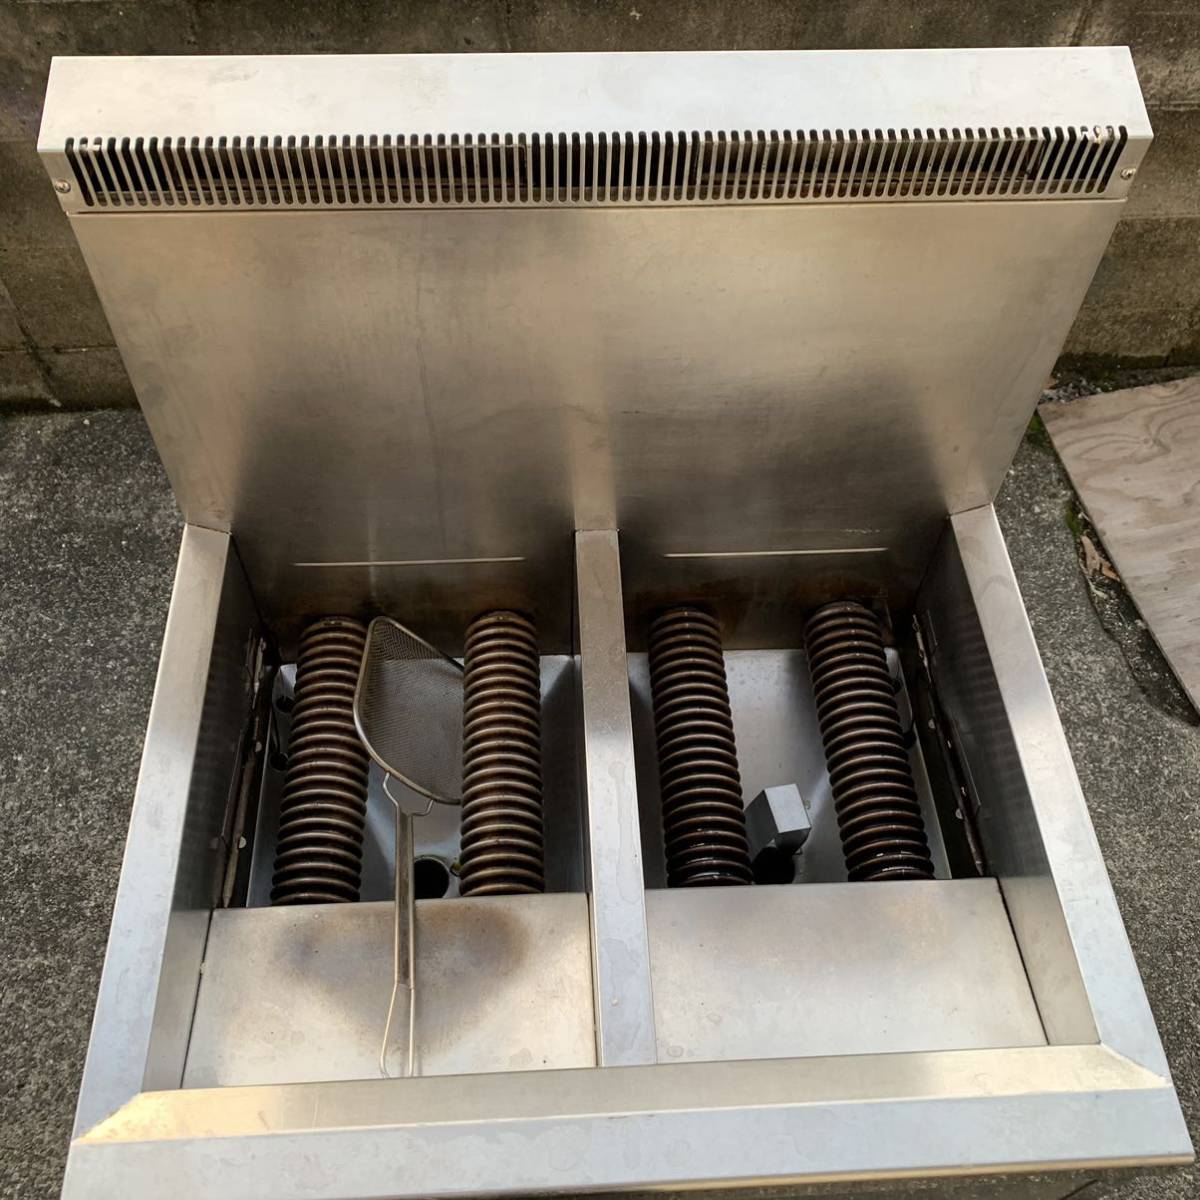 tanico/タニコー ガスフライヤー 都市ガス 厨房機器 厨房用品 業務用 店舗用 2槽ガスフライヤー 品